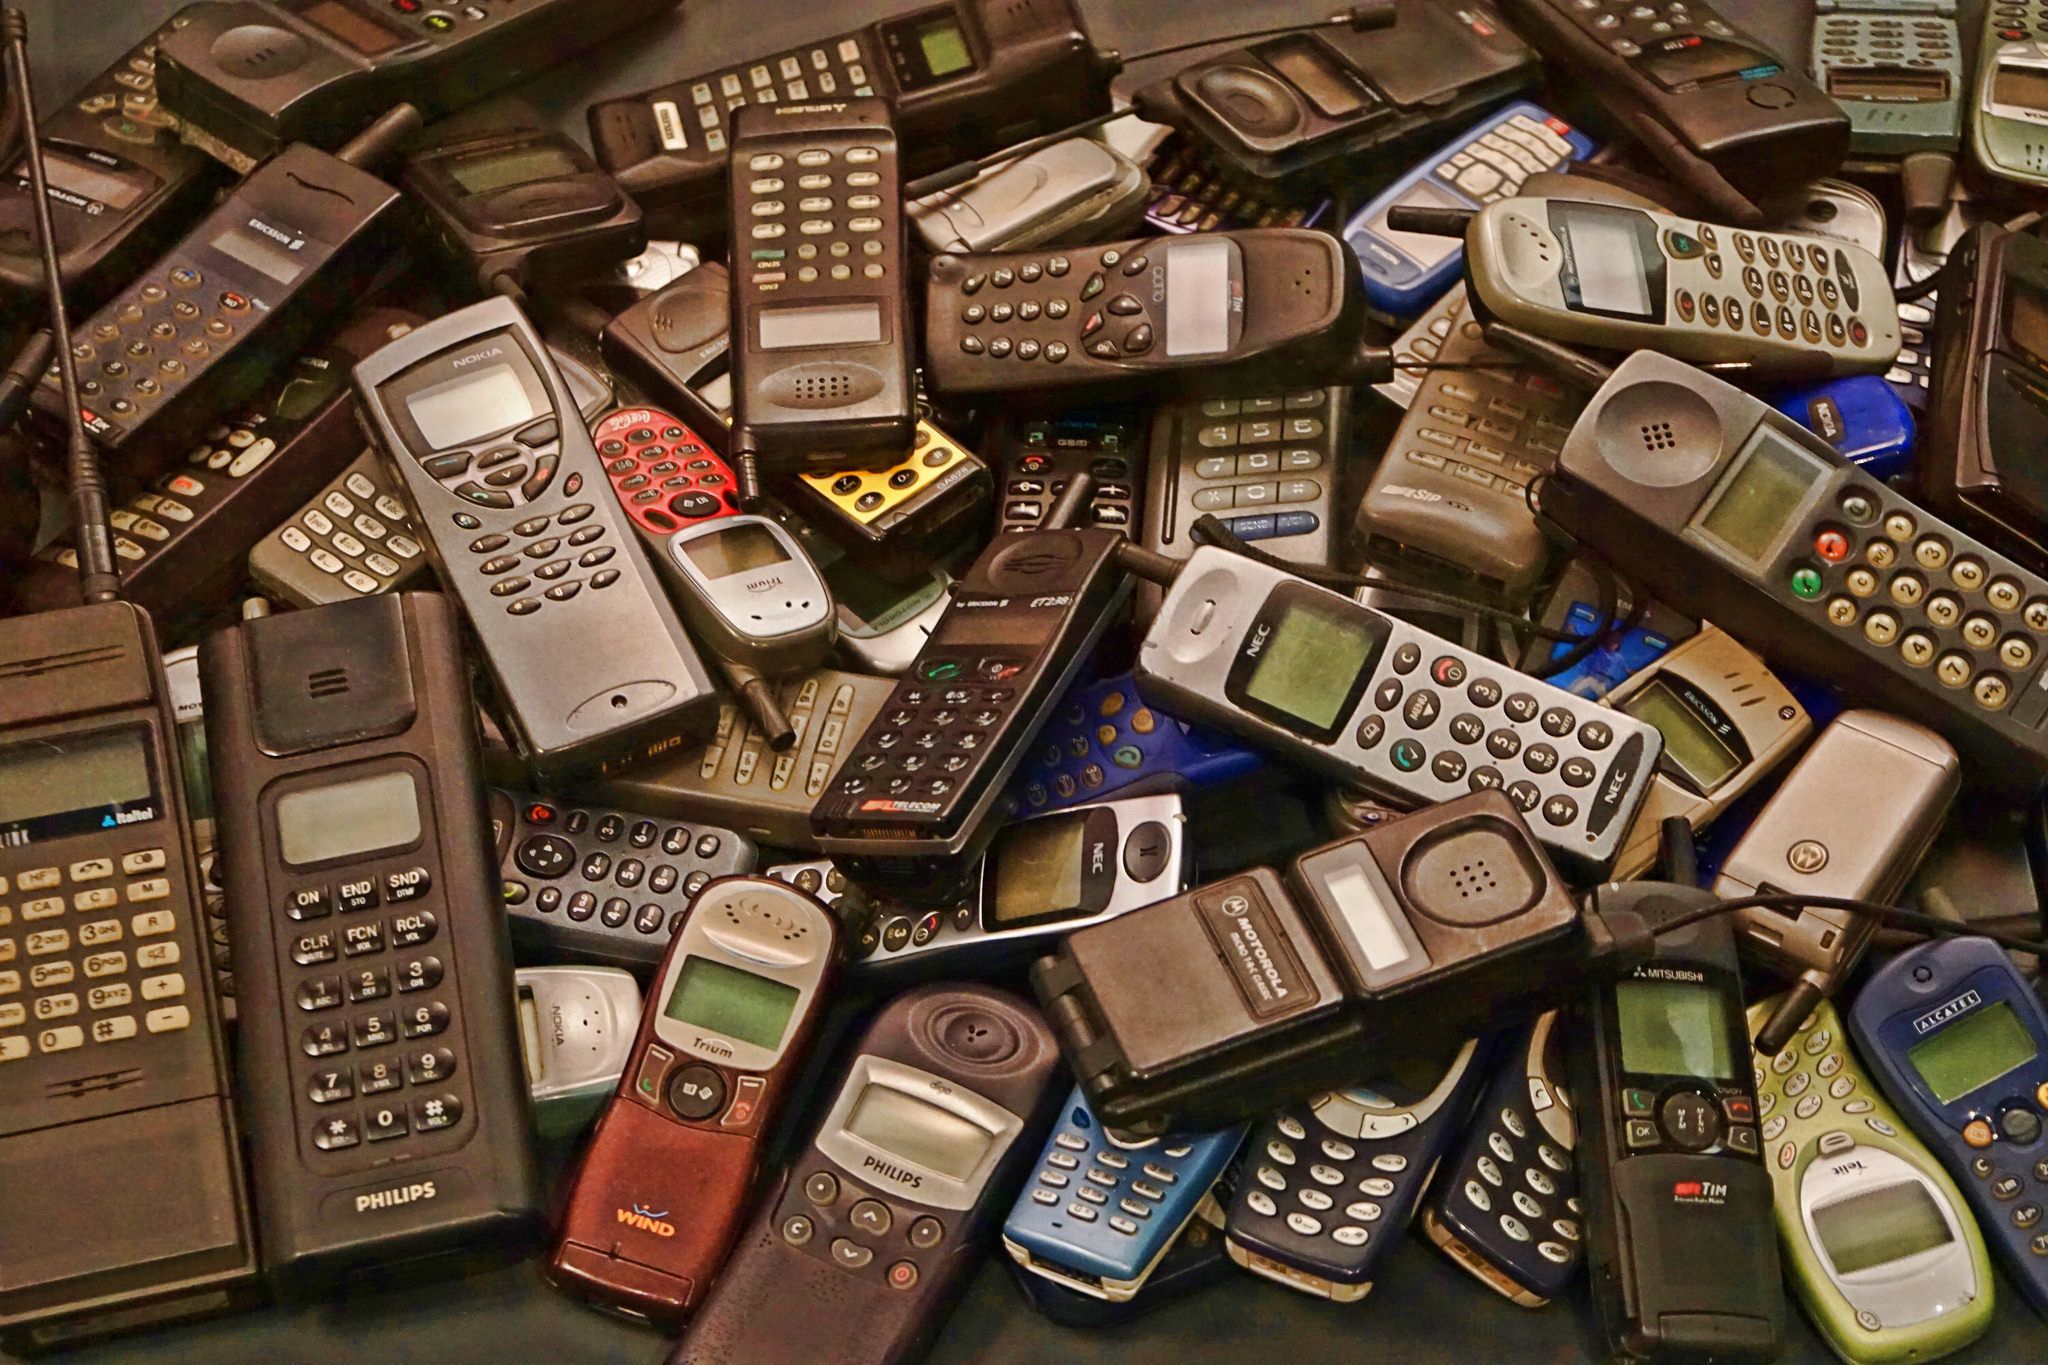 Хабаровск мобильных телефонов. Старые смартфоны. Старые мобильники. Старый телефон. Телефоны 90-х.